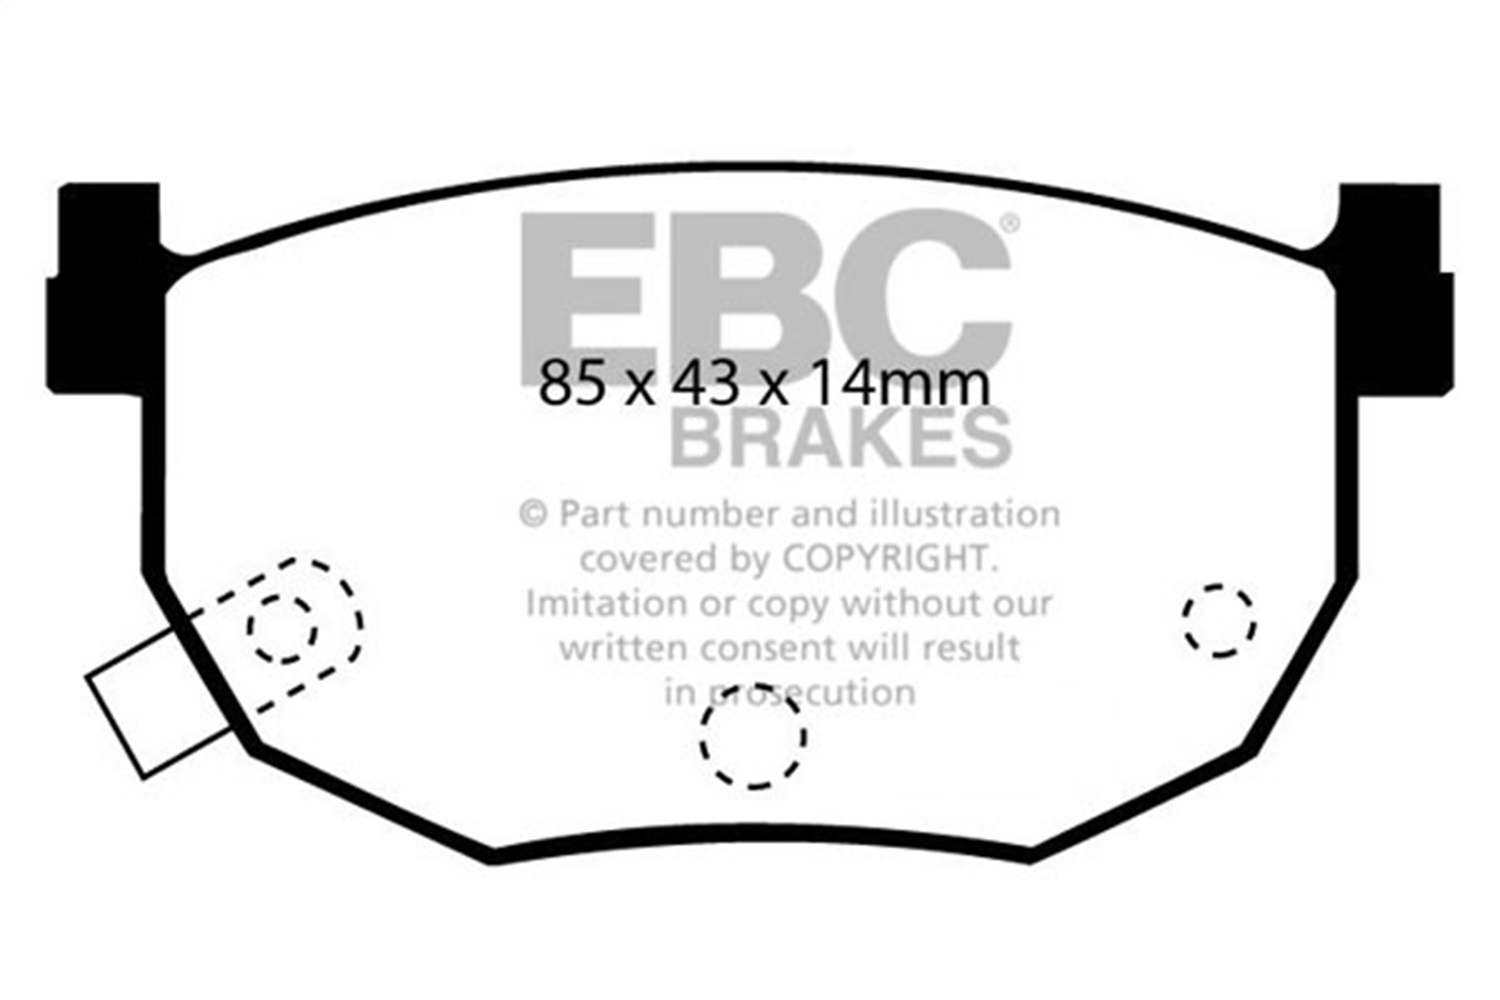 EBC Brakes UD272 Ultimax  Brake Pads Fits 89-08 240SX Elantra Tiburon